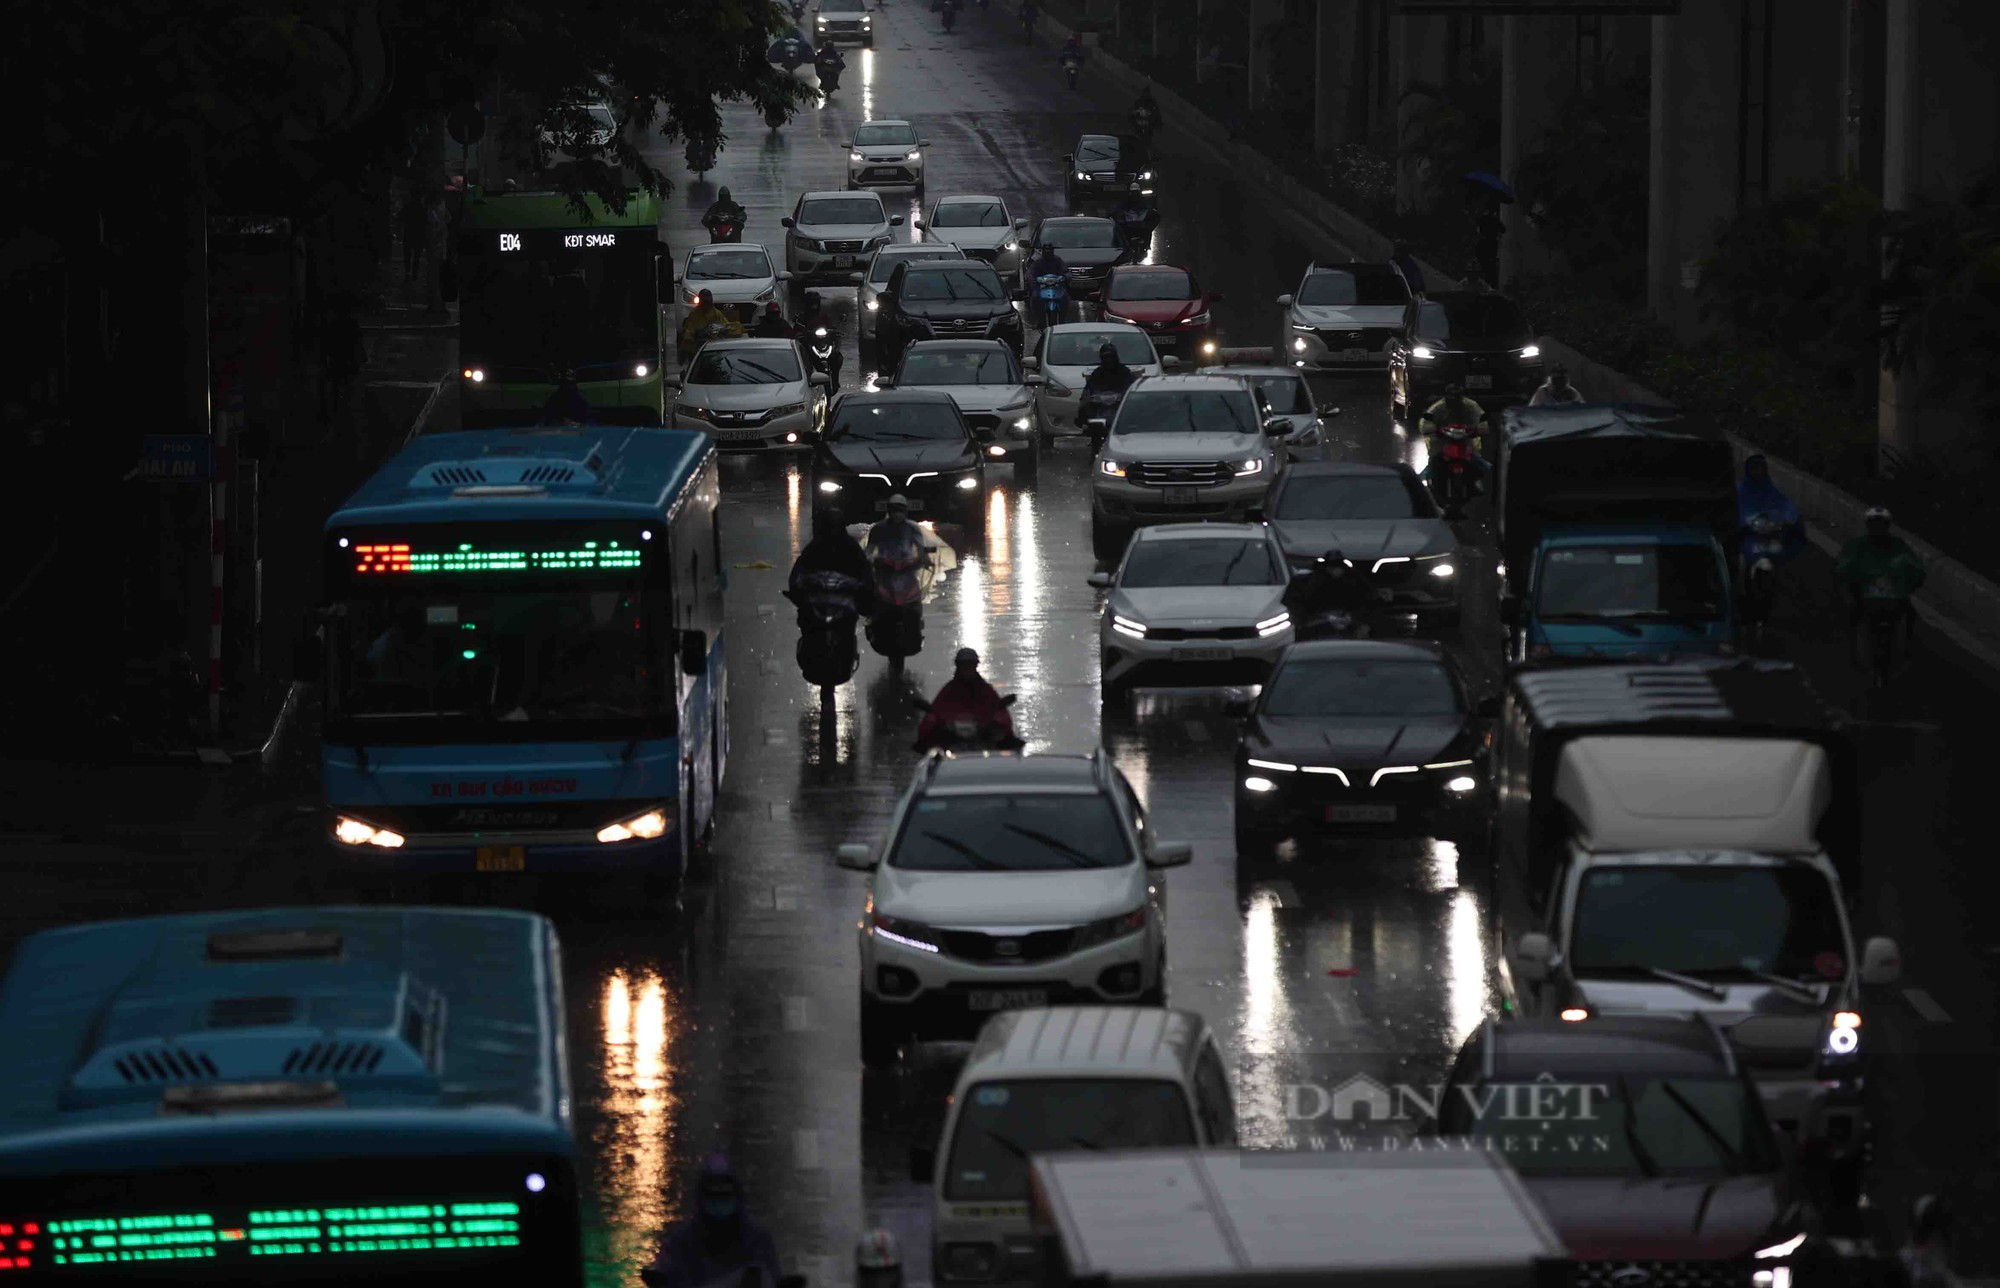 Hà Nội mưa cả ngày, nhiều ôtô phải bật đèn giữa trưa vì giảm tầm nhìn  - Ảnh 2.